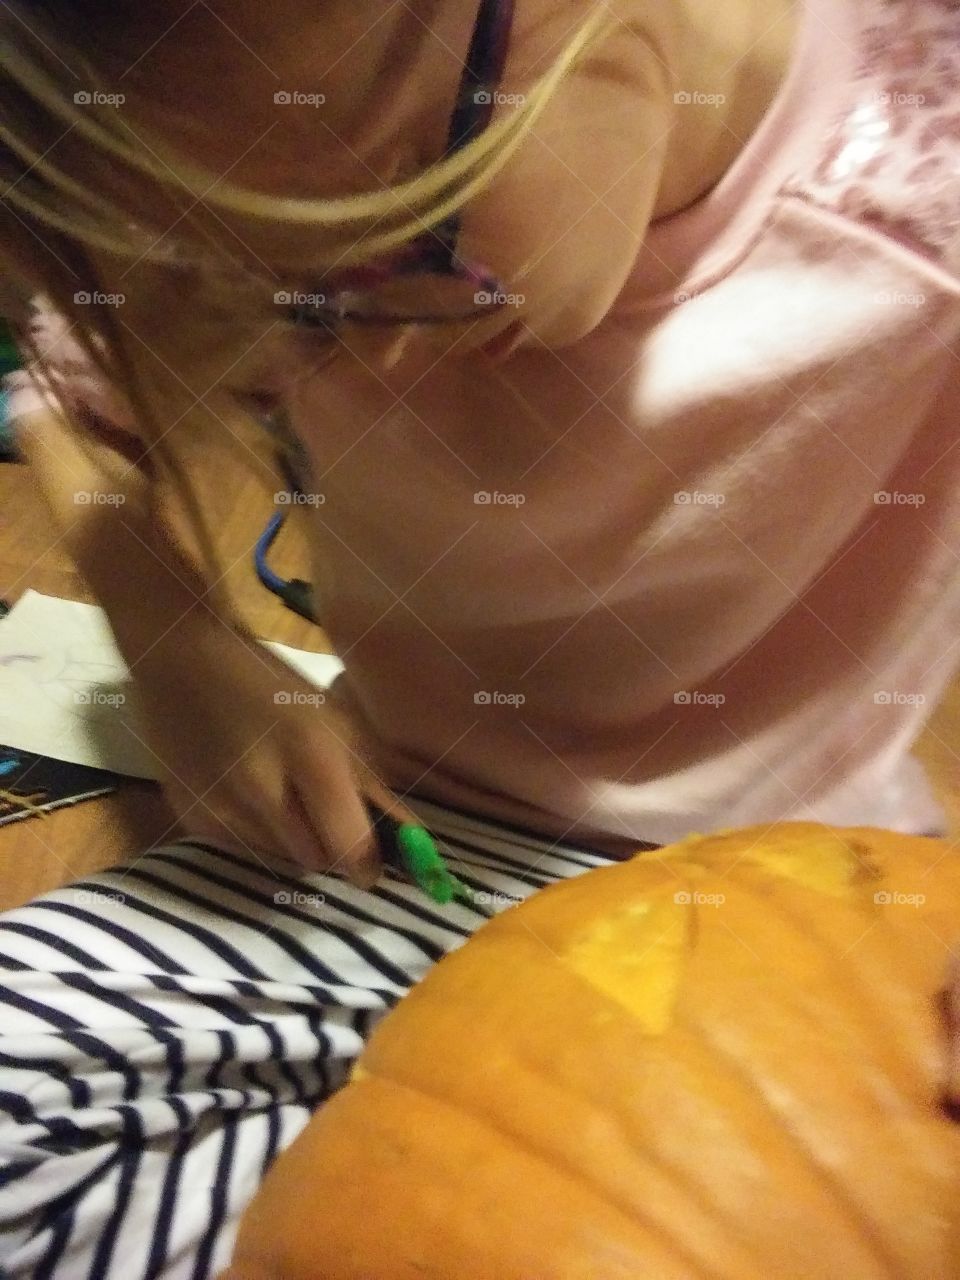 little girl carving a pumpkin